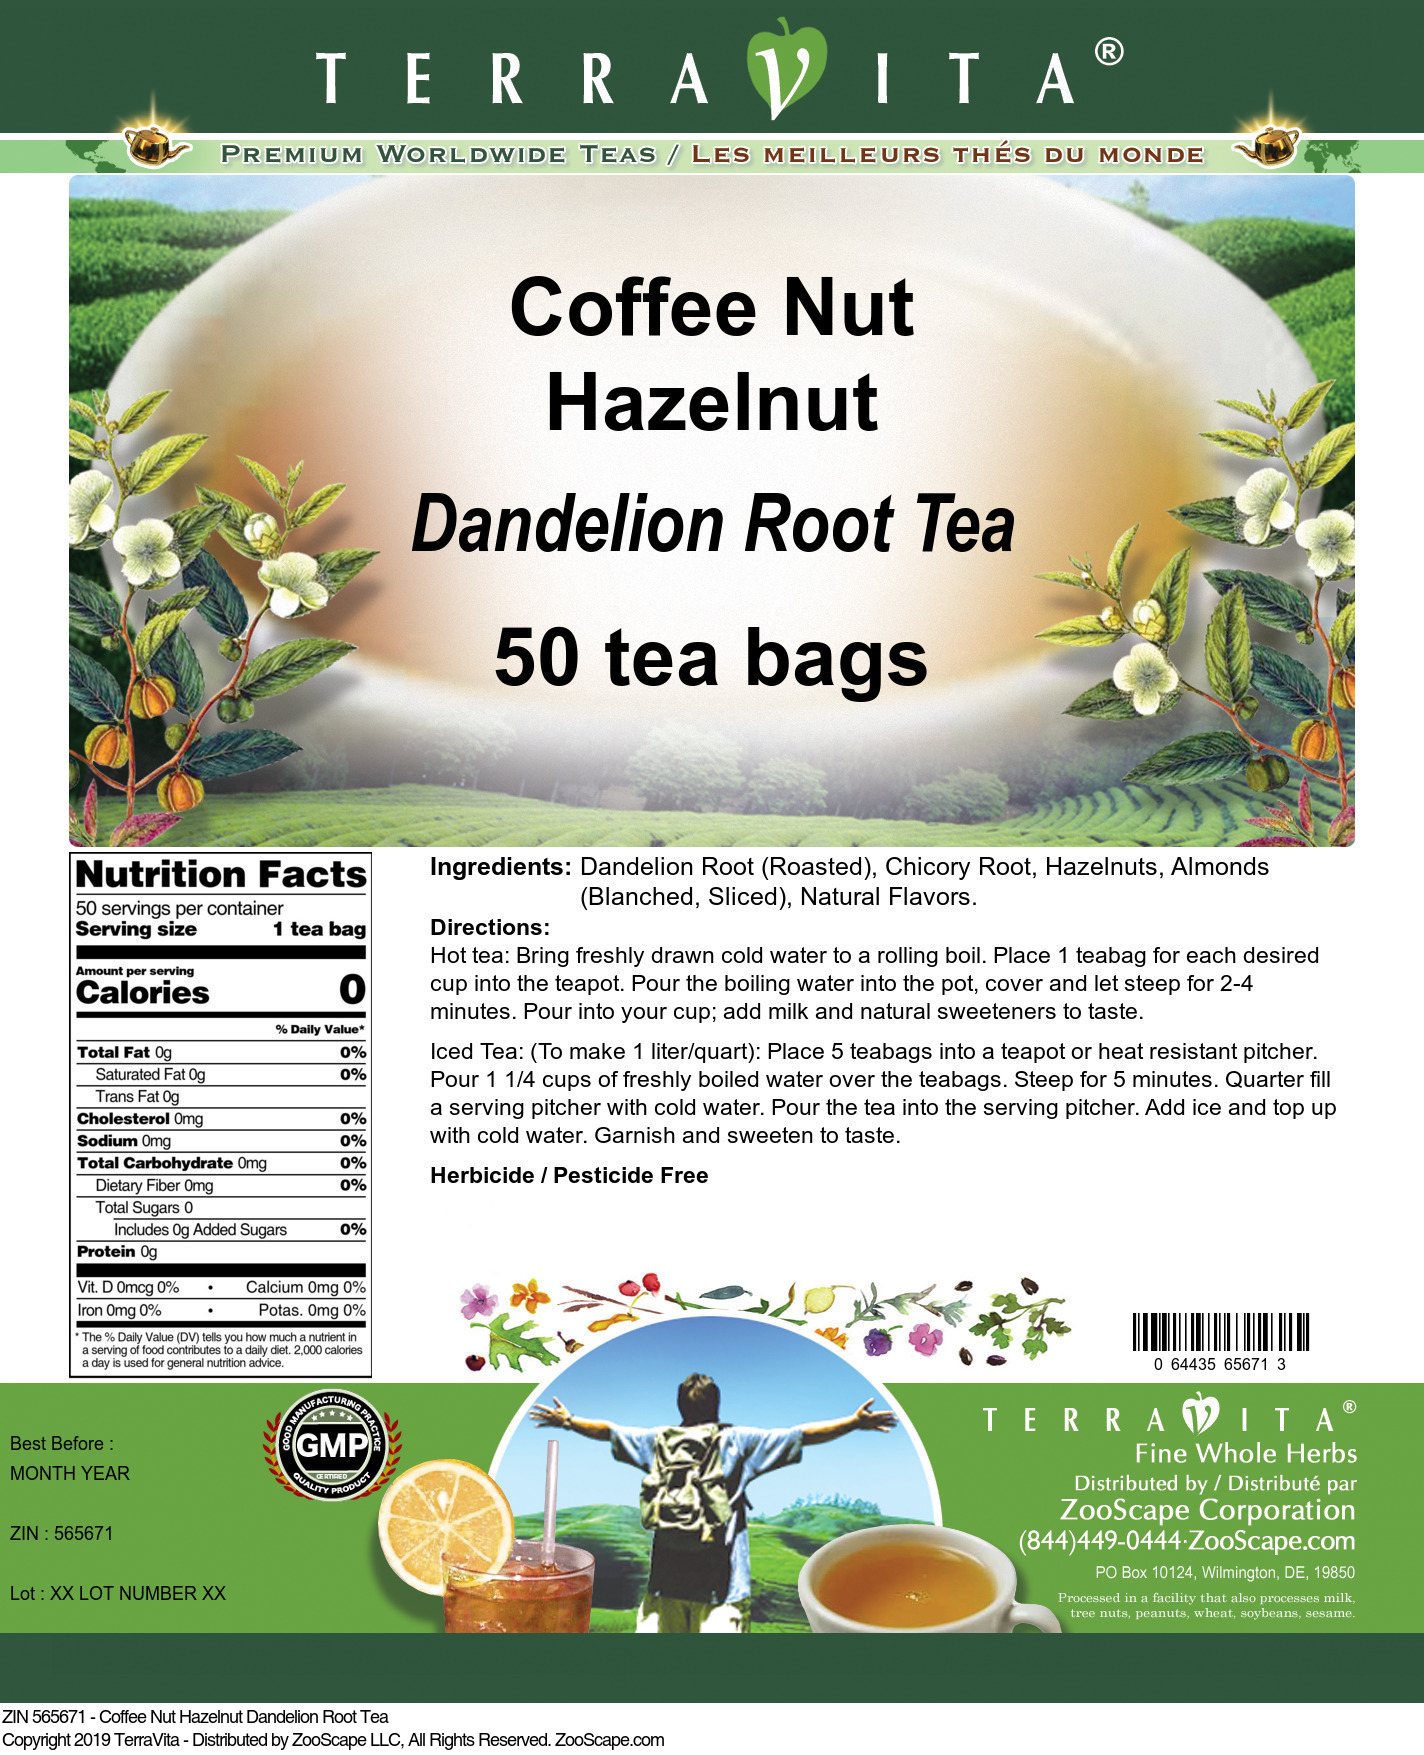 Coffee Nut Hazelnut Dandelion Root Tea - Label